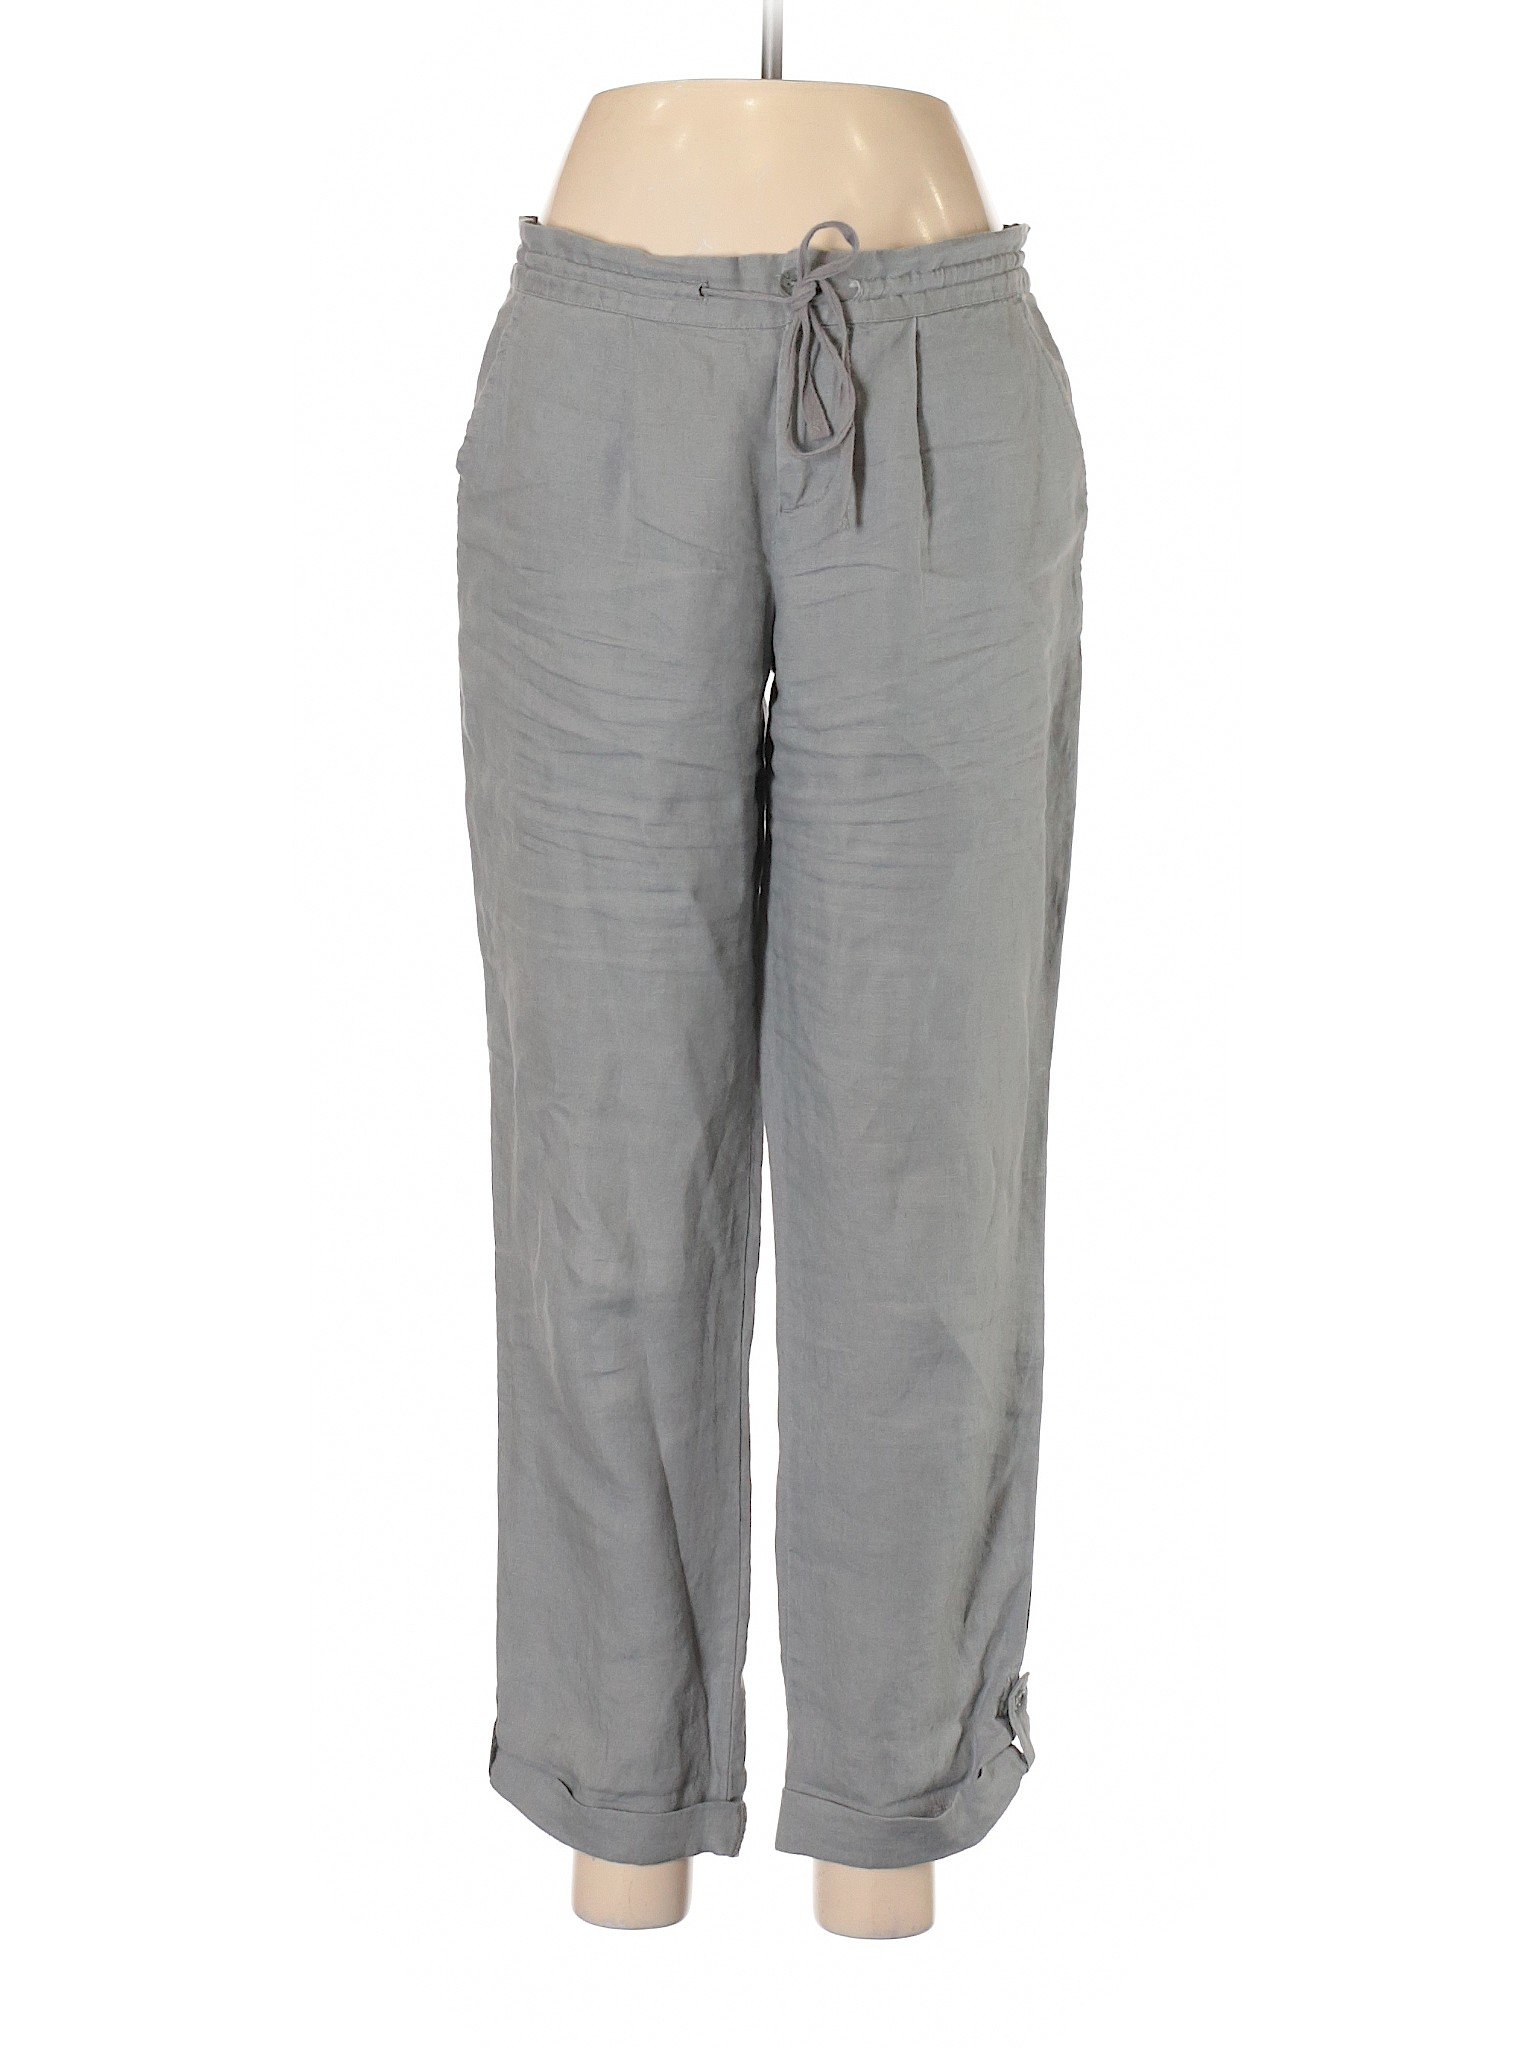 Cynthia Rowley TJX Women Gray Linen Pants 6 | eBay